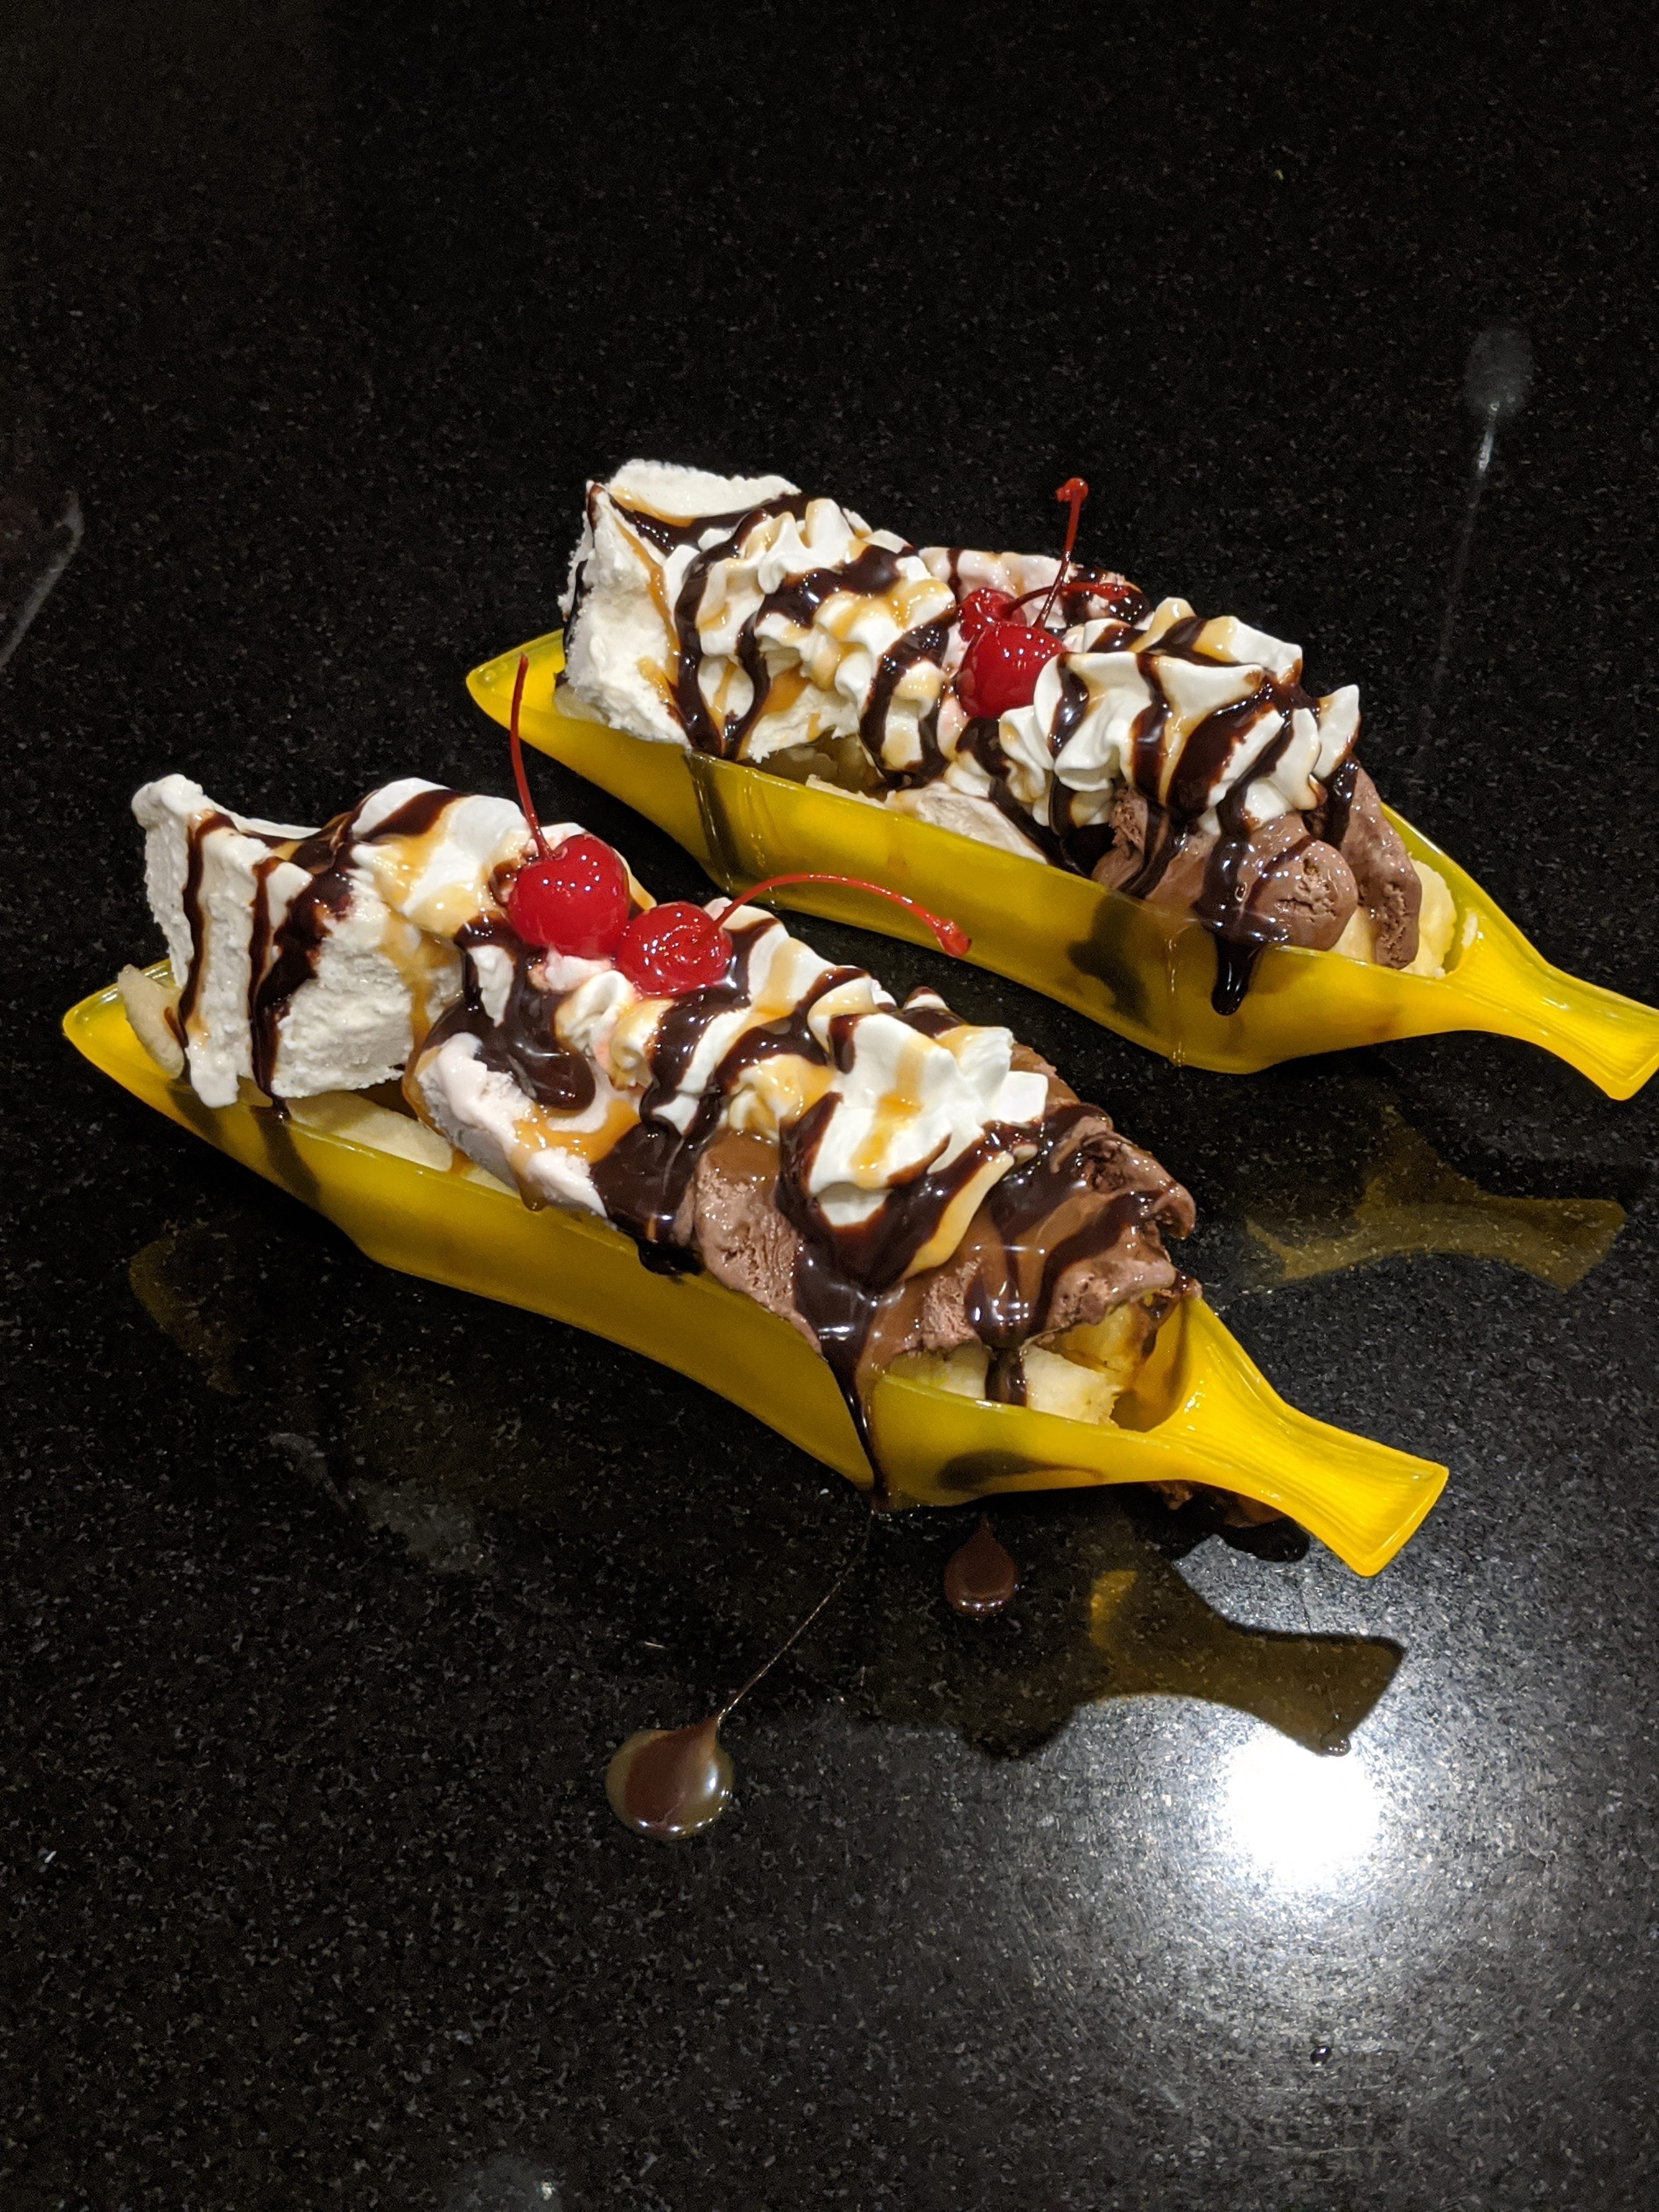 banana-splits-chocolate-ice-cream-whipped-cream